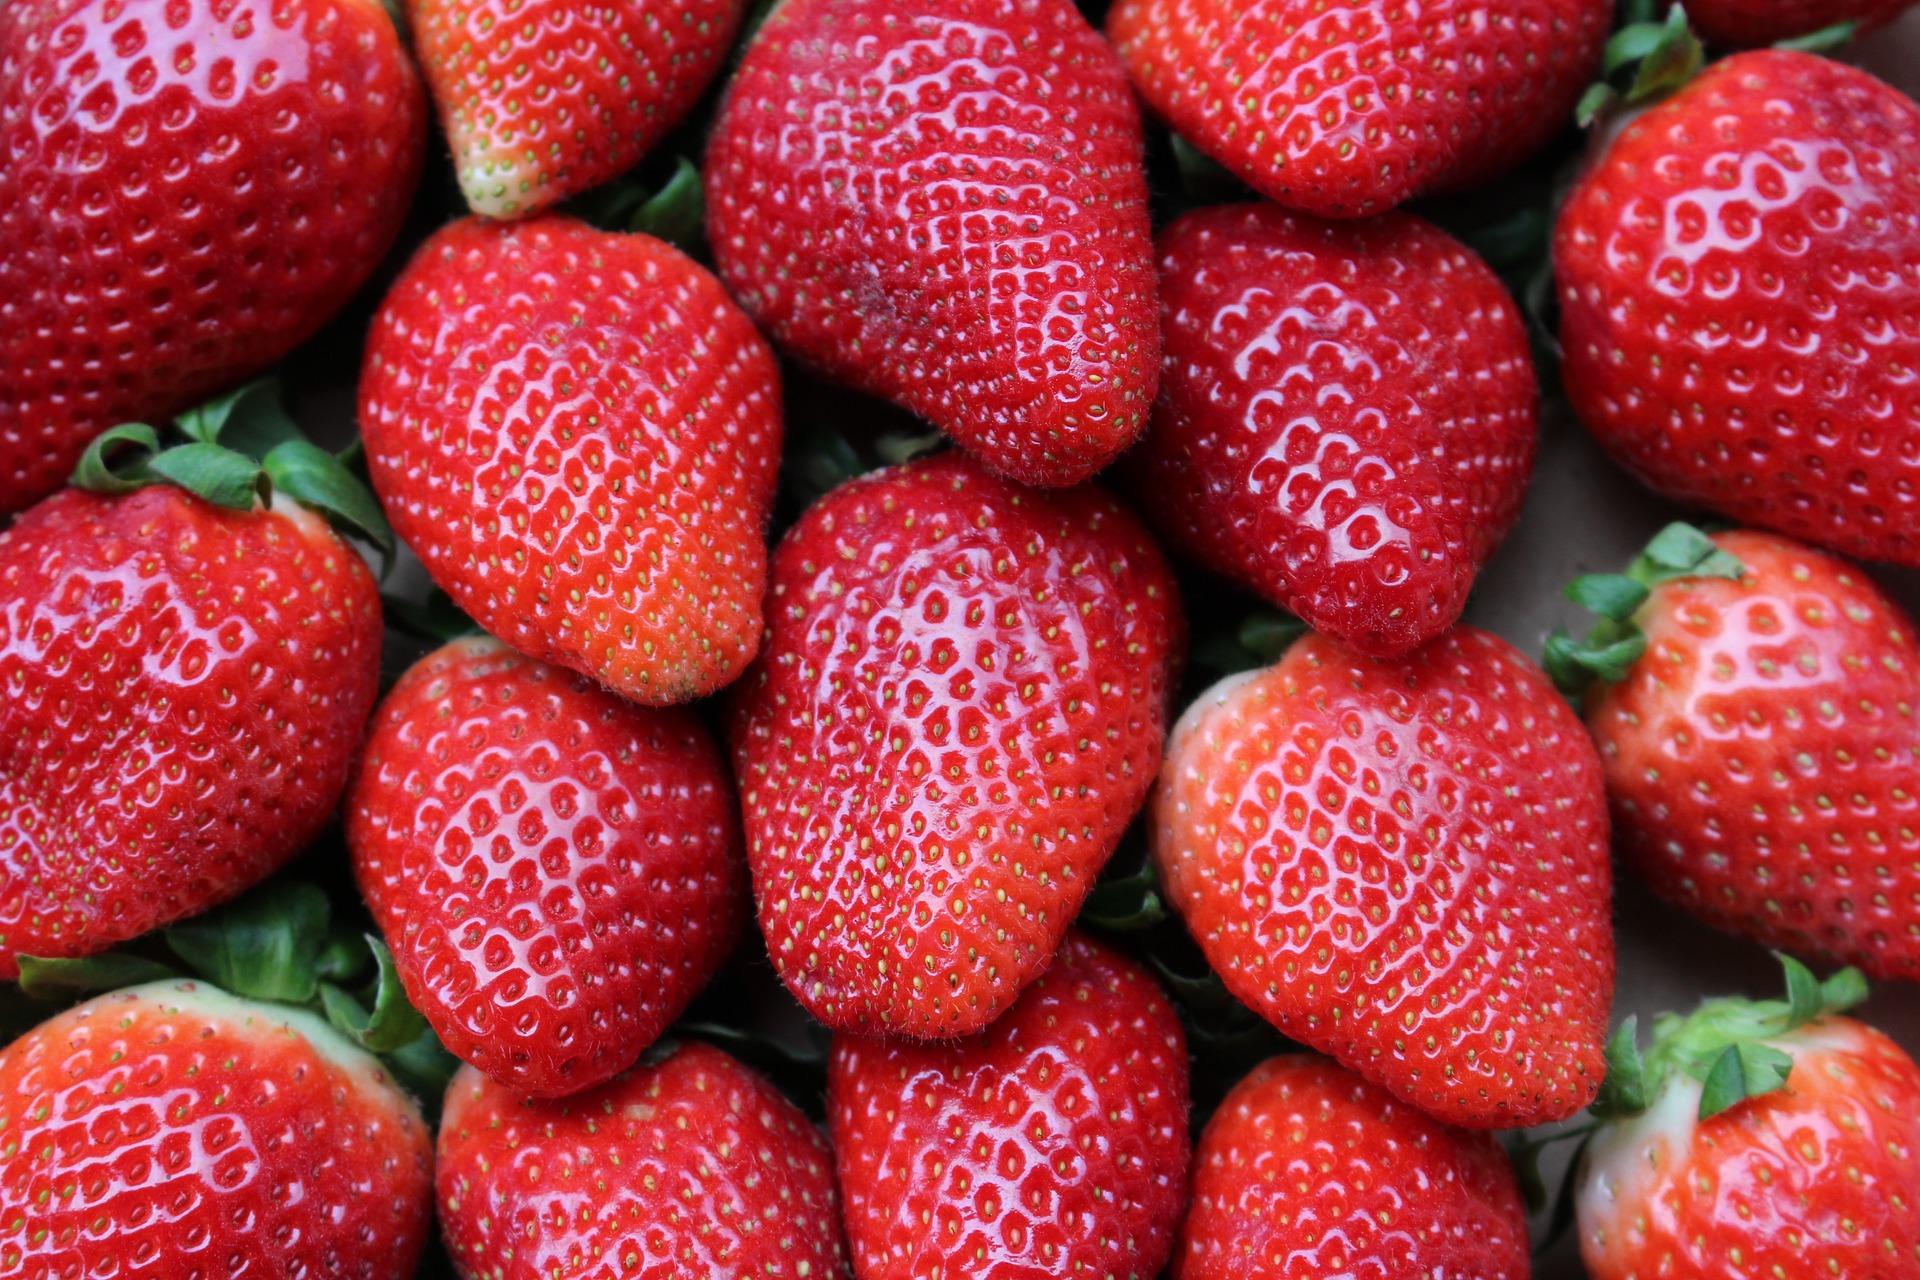 Manfaat yang Diperoleh dari Buah Strawberry, Mulai dari Mengurangi Kolesterol Hingga Berat Badan